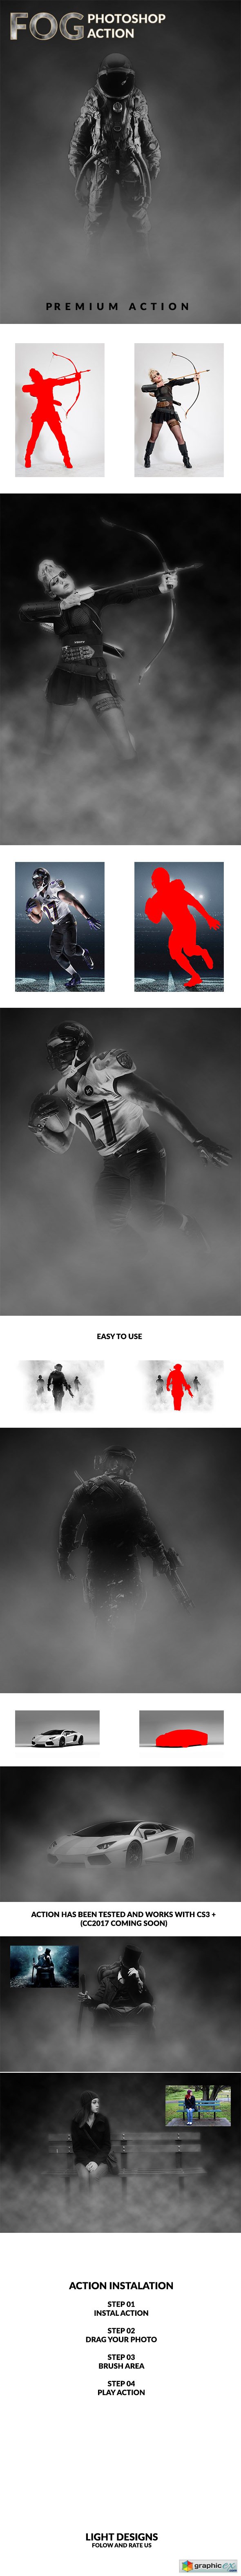 Fog - Photoshop Action